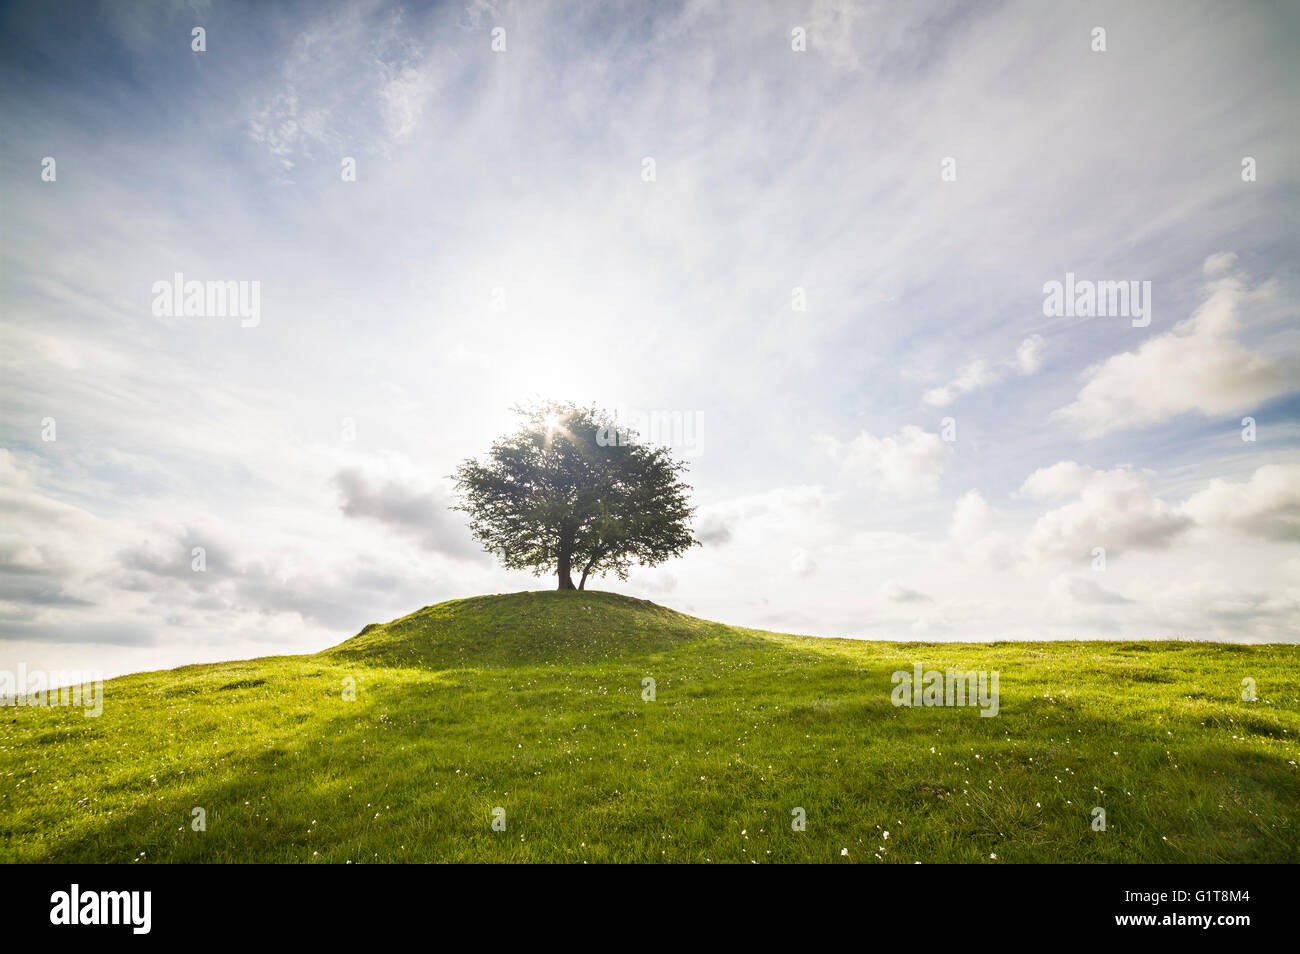 Lonely tree sur une colline face au soleil avec un ciel dramatique. Osterlen, Skane / Scania, la Suède. La Scandinavie. Banque D'Images